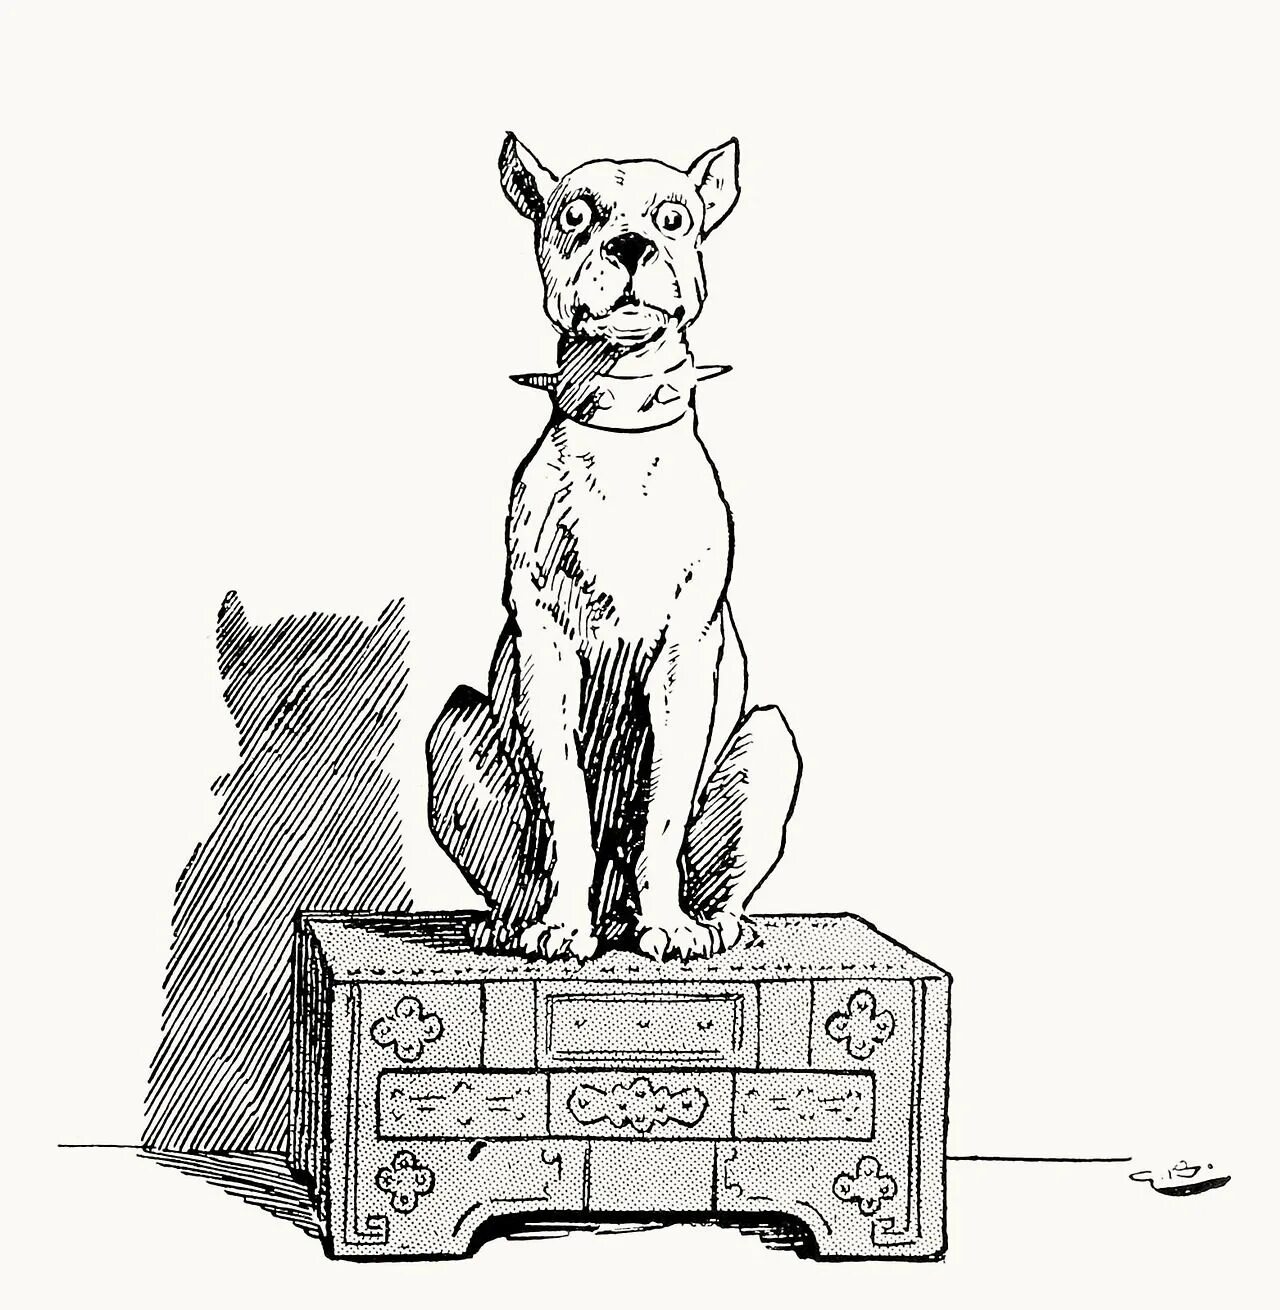 Огниво Ханс Кристиан Андерсен раскраска. Огниво Андерсен собаки. Огниво Ханс Кристиан Андерсен рисунок. Сказка Андерсена огниво собаки. Рисунок к сказке огниво